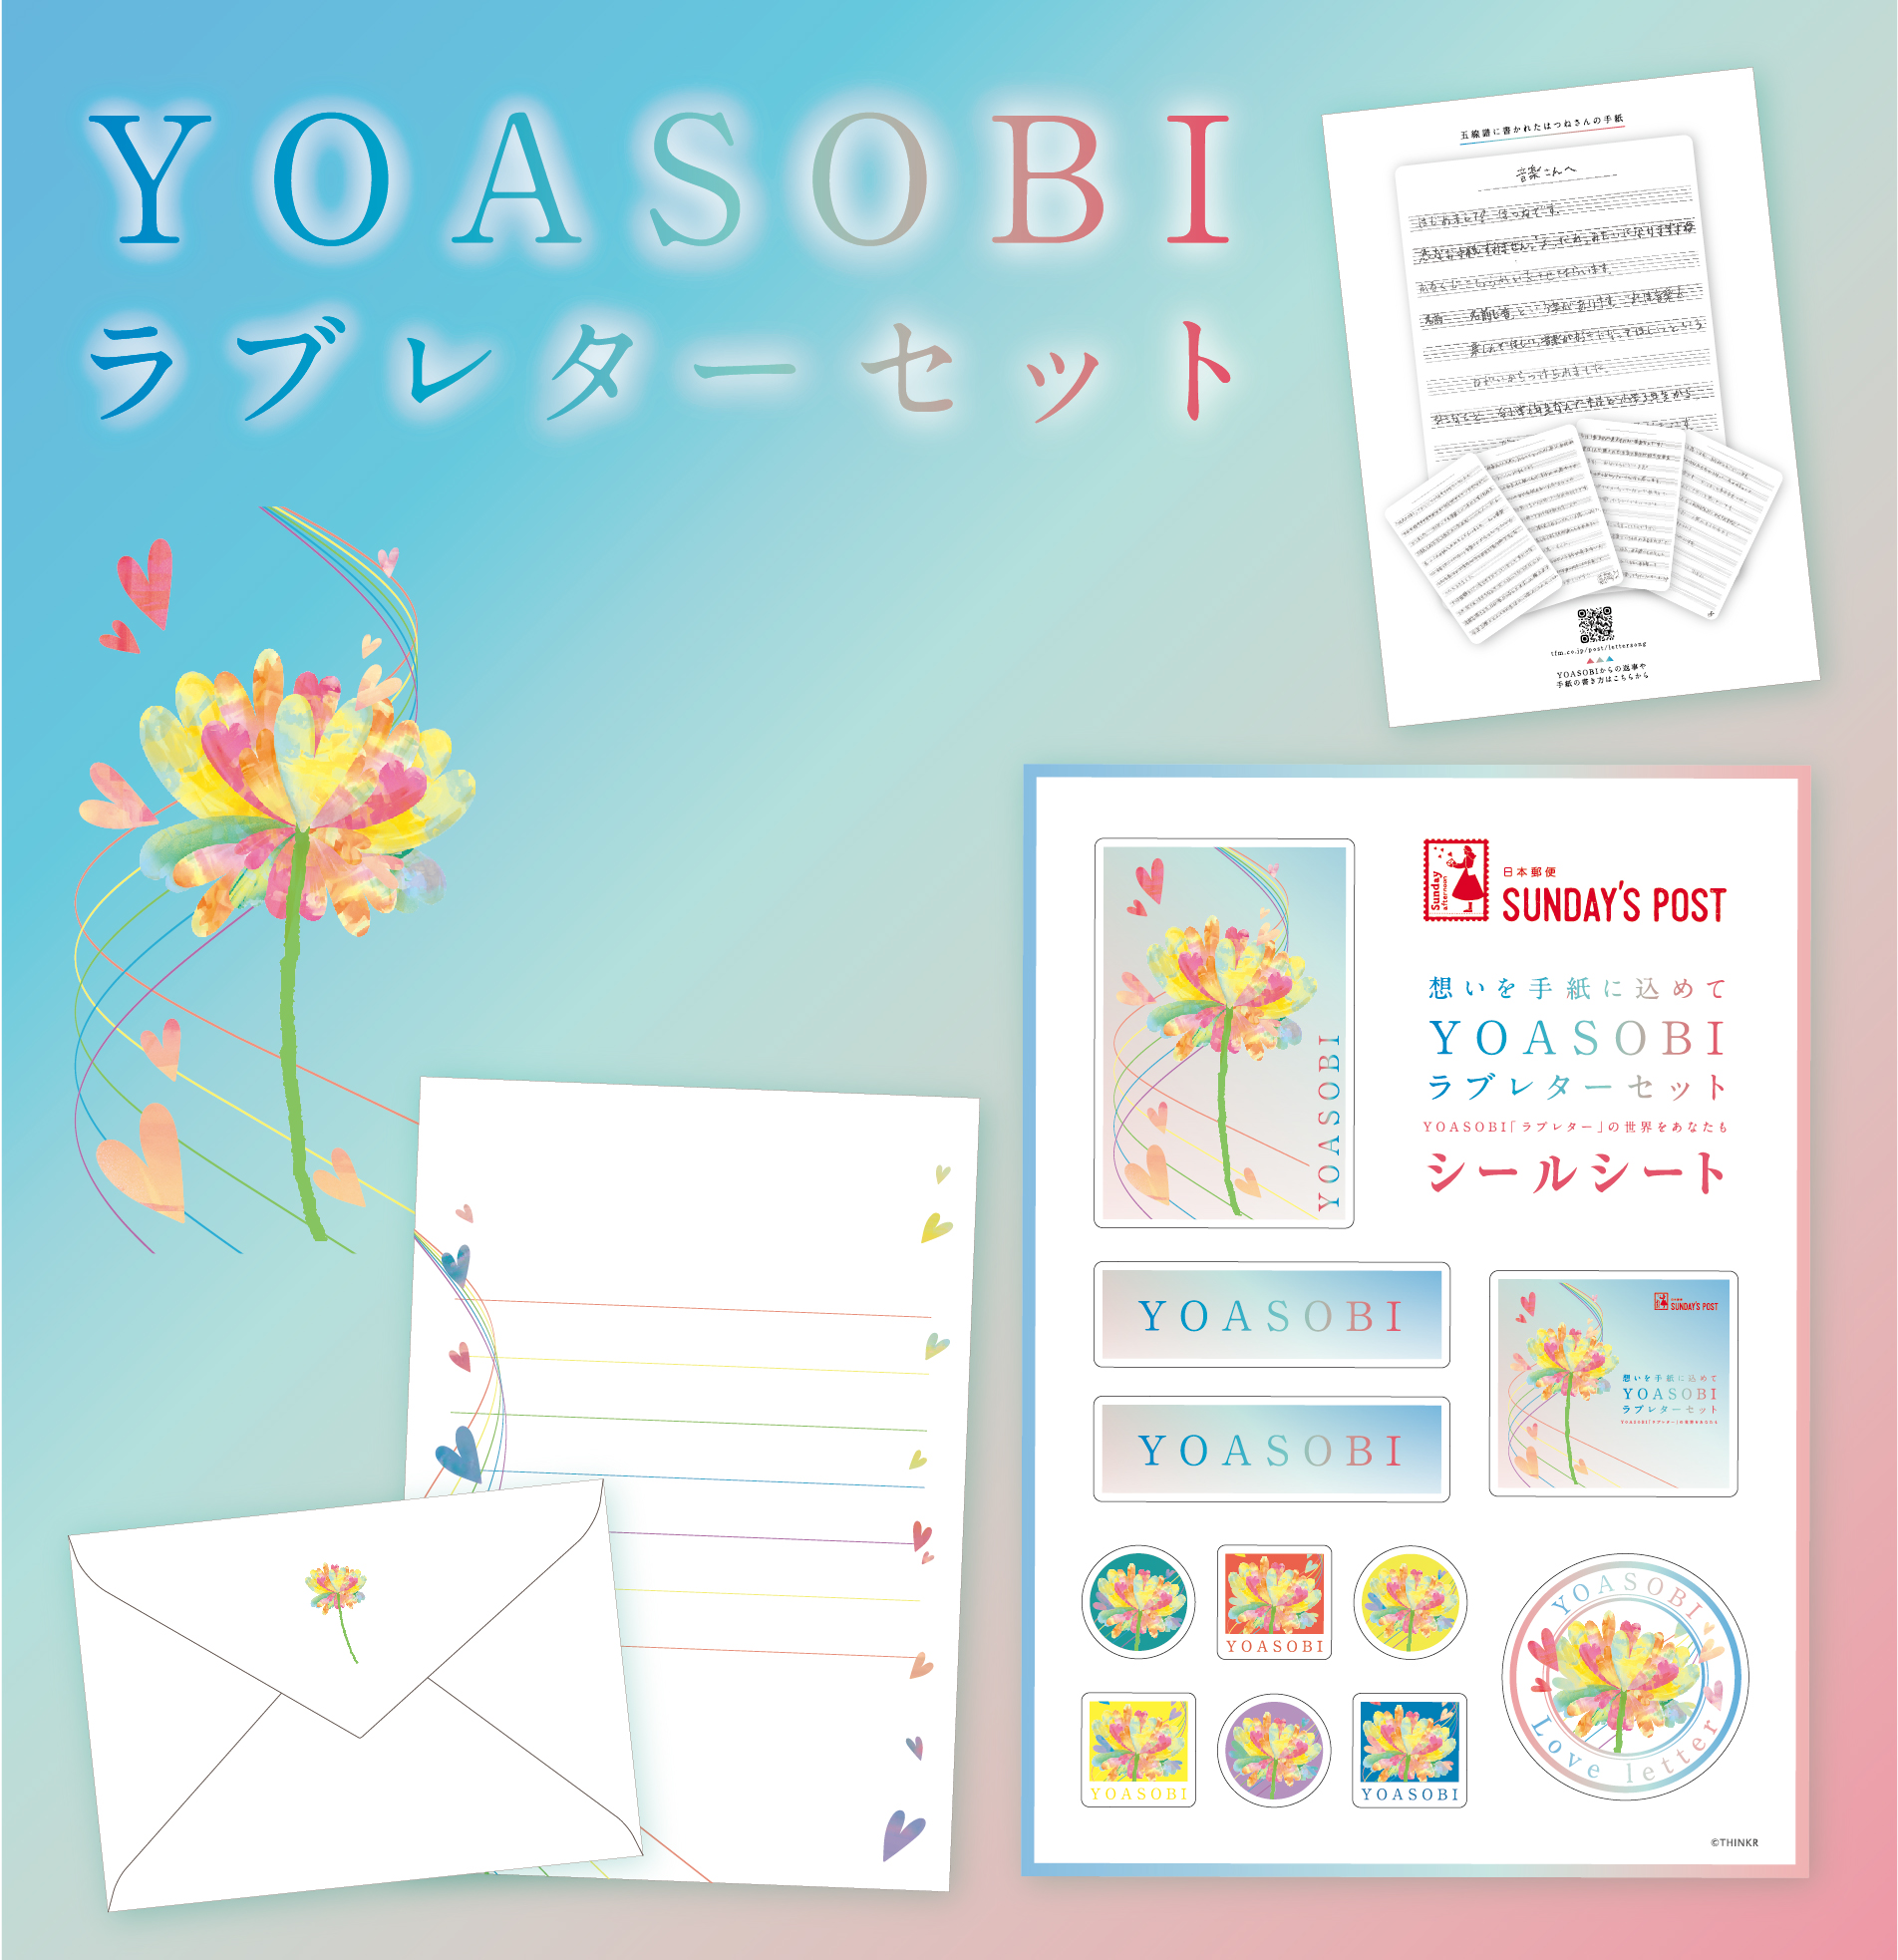 Yoasobi オフィシャルサイト